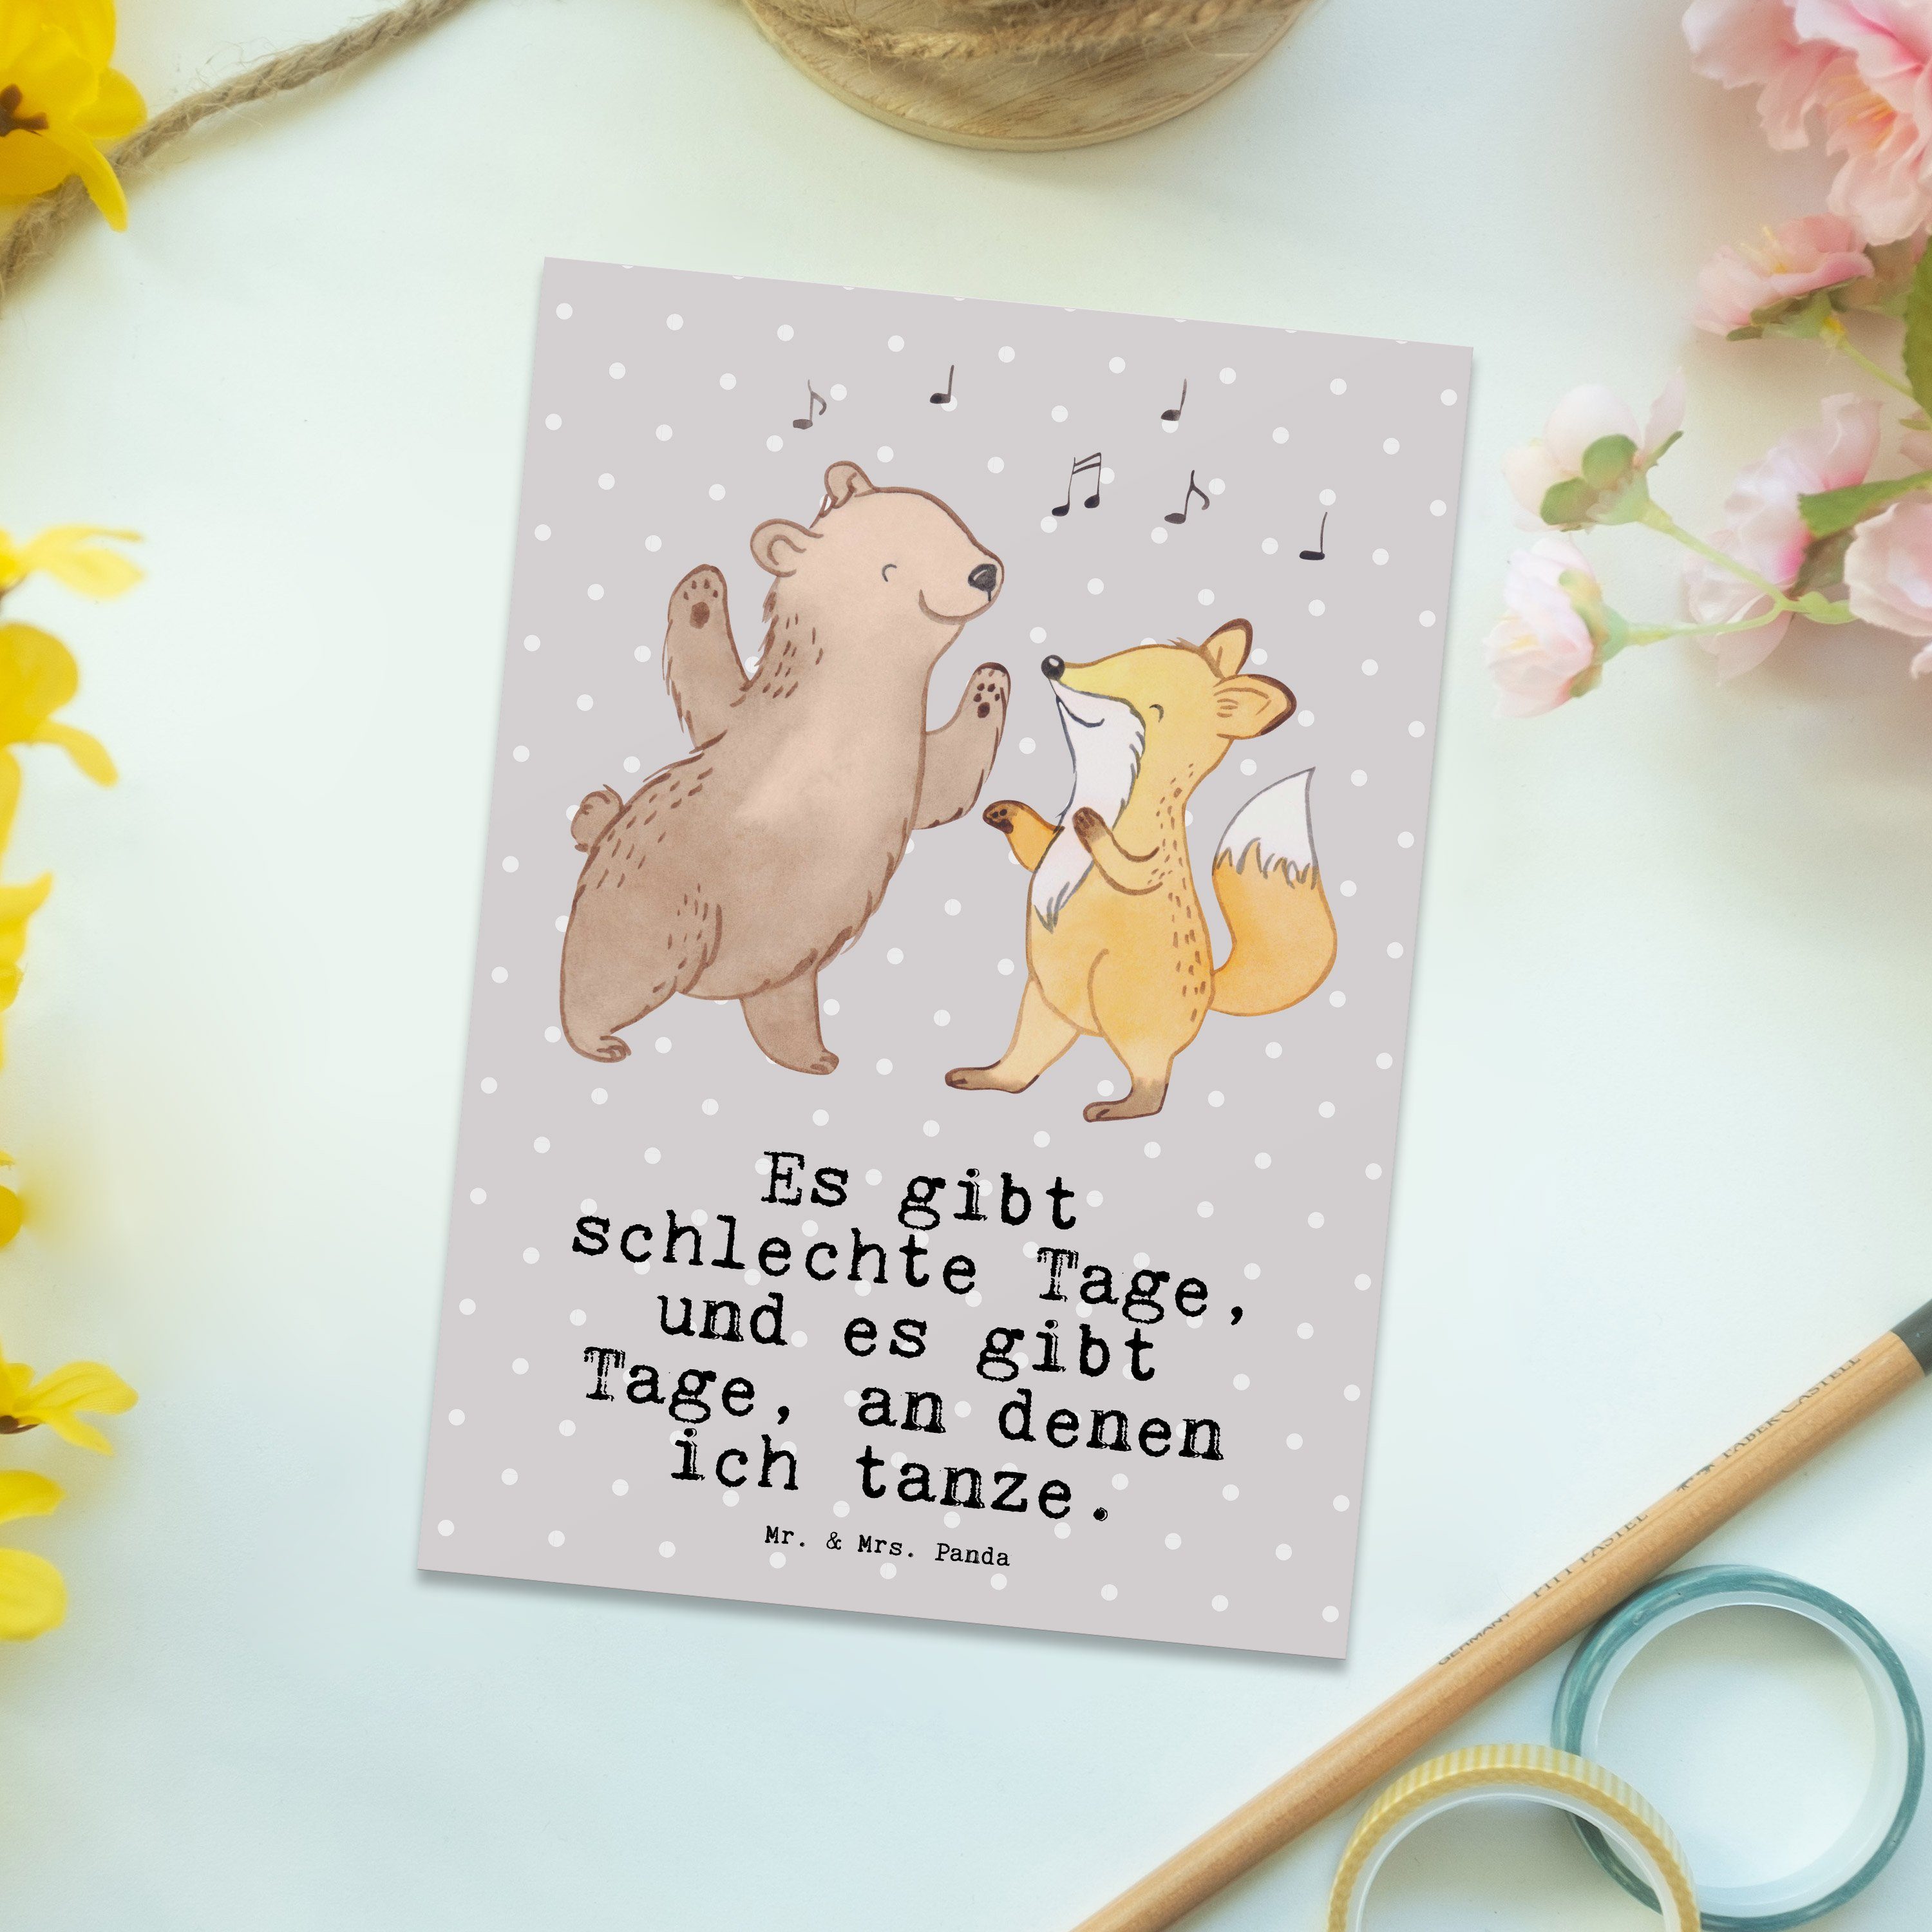 Mr. & Mrs. Panda Postkarte Grau - Geburtstag Tanzen Ansichtskarte, - Geschenk, Hase Tage Pastell